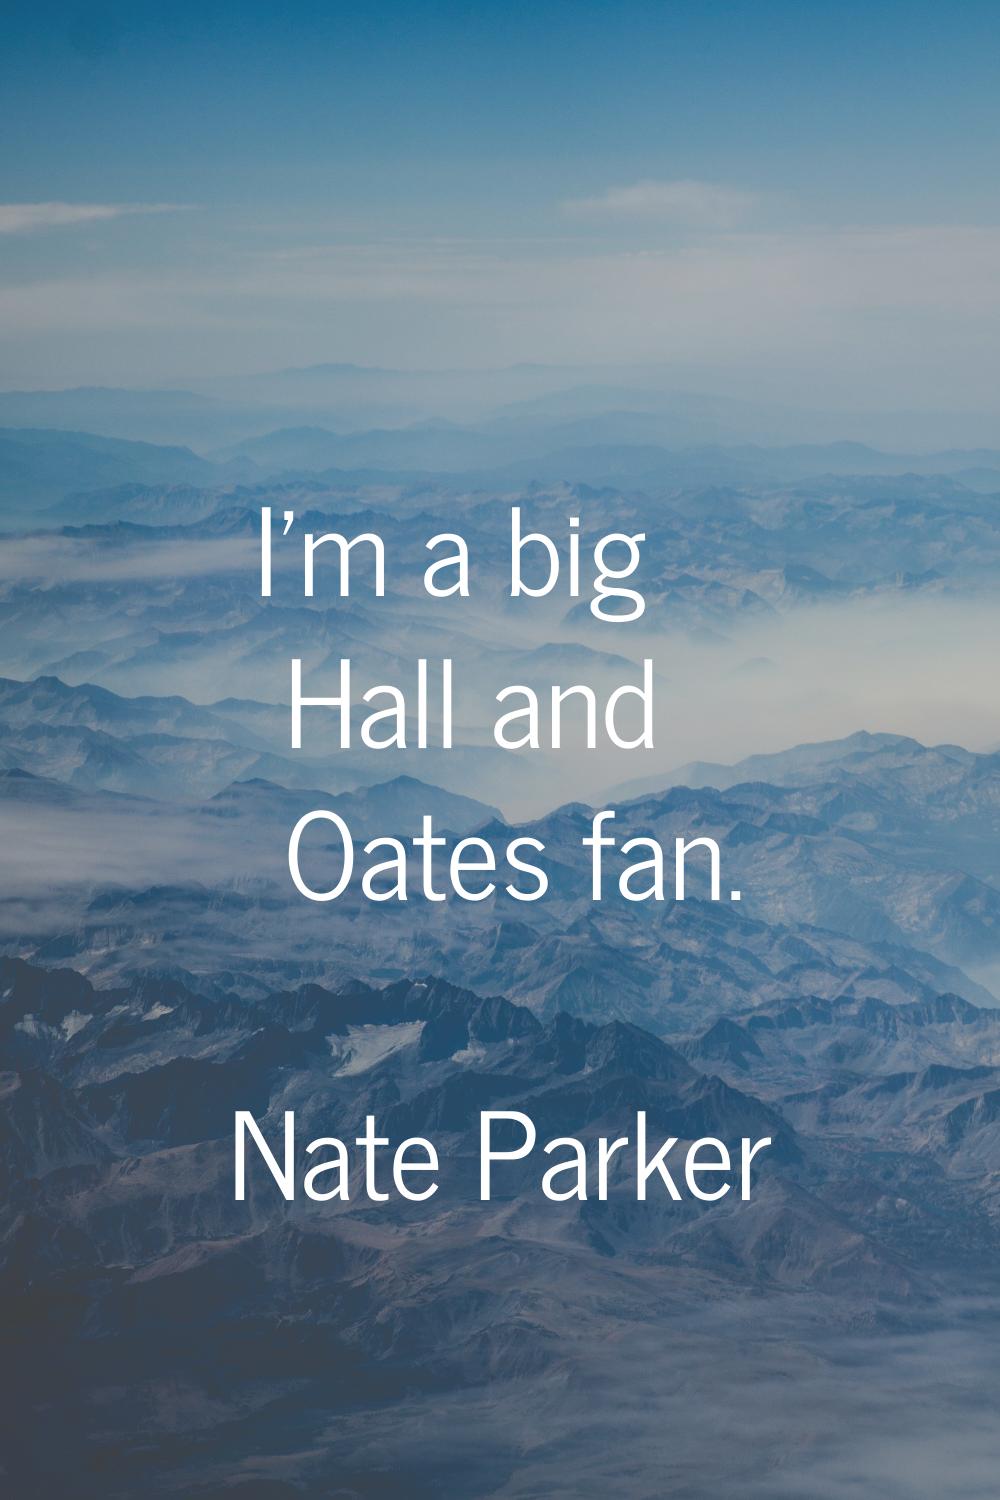 I'm a big Hall and Oates fan.